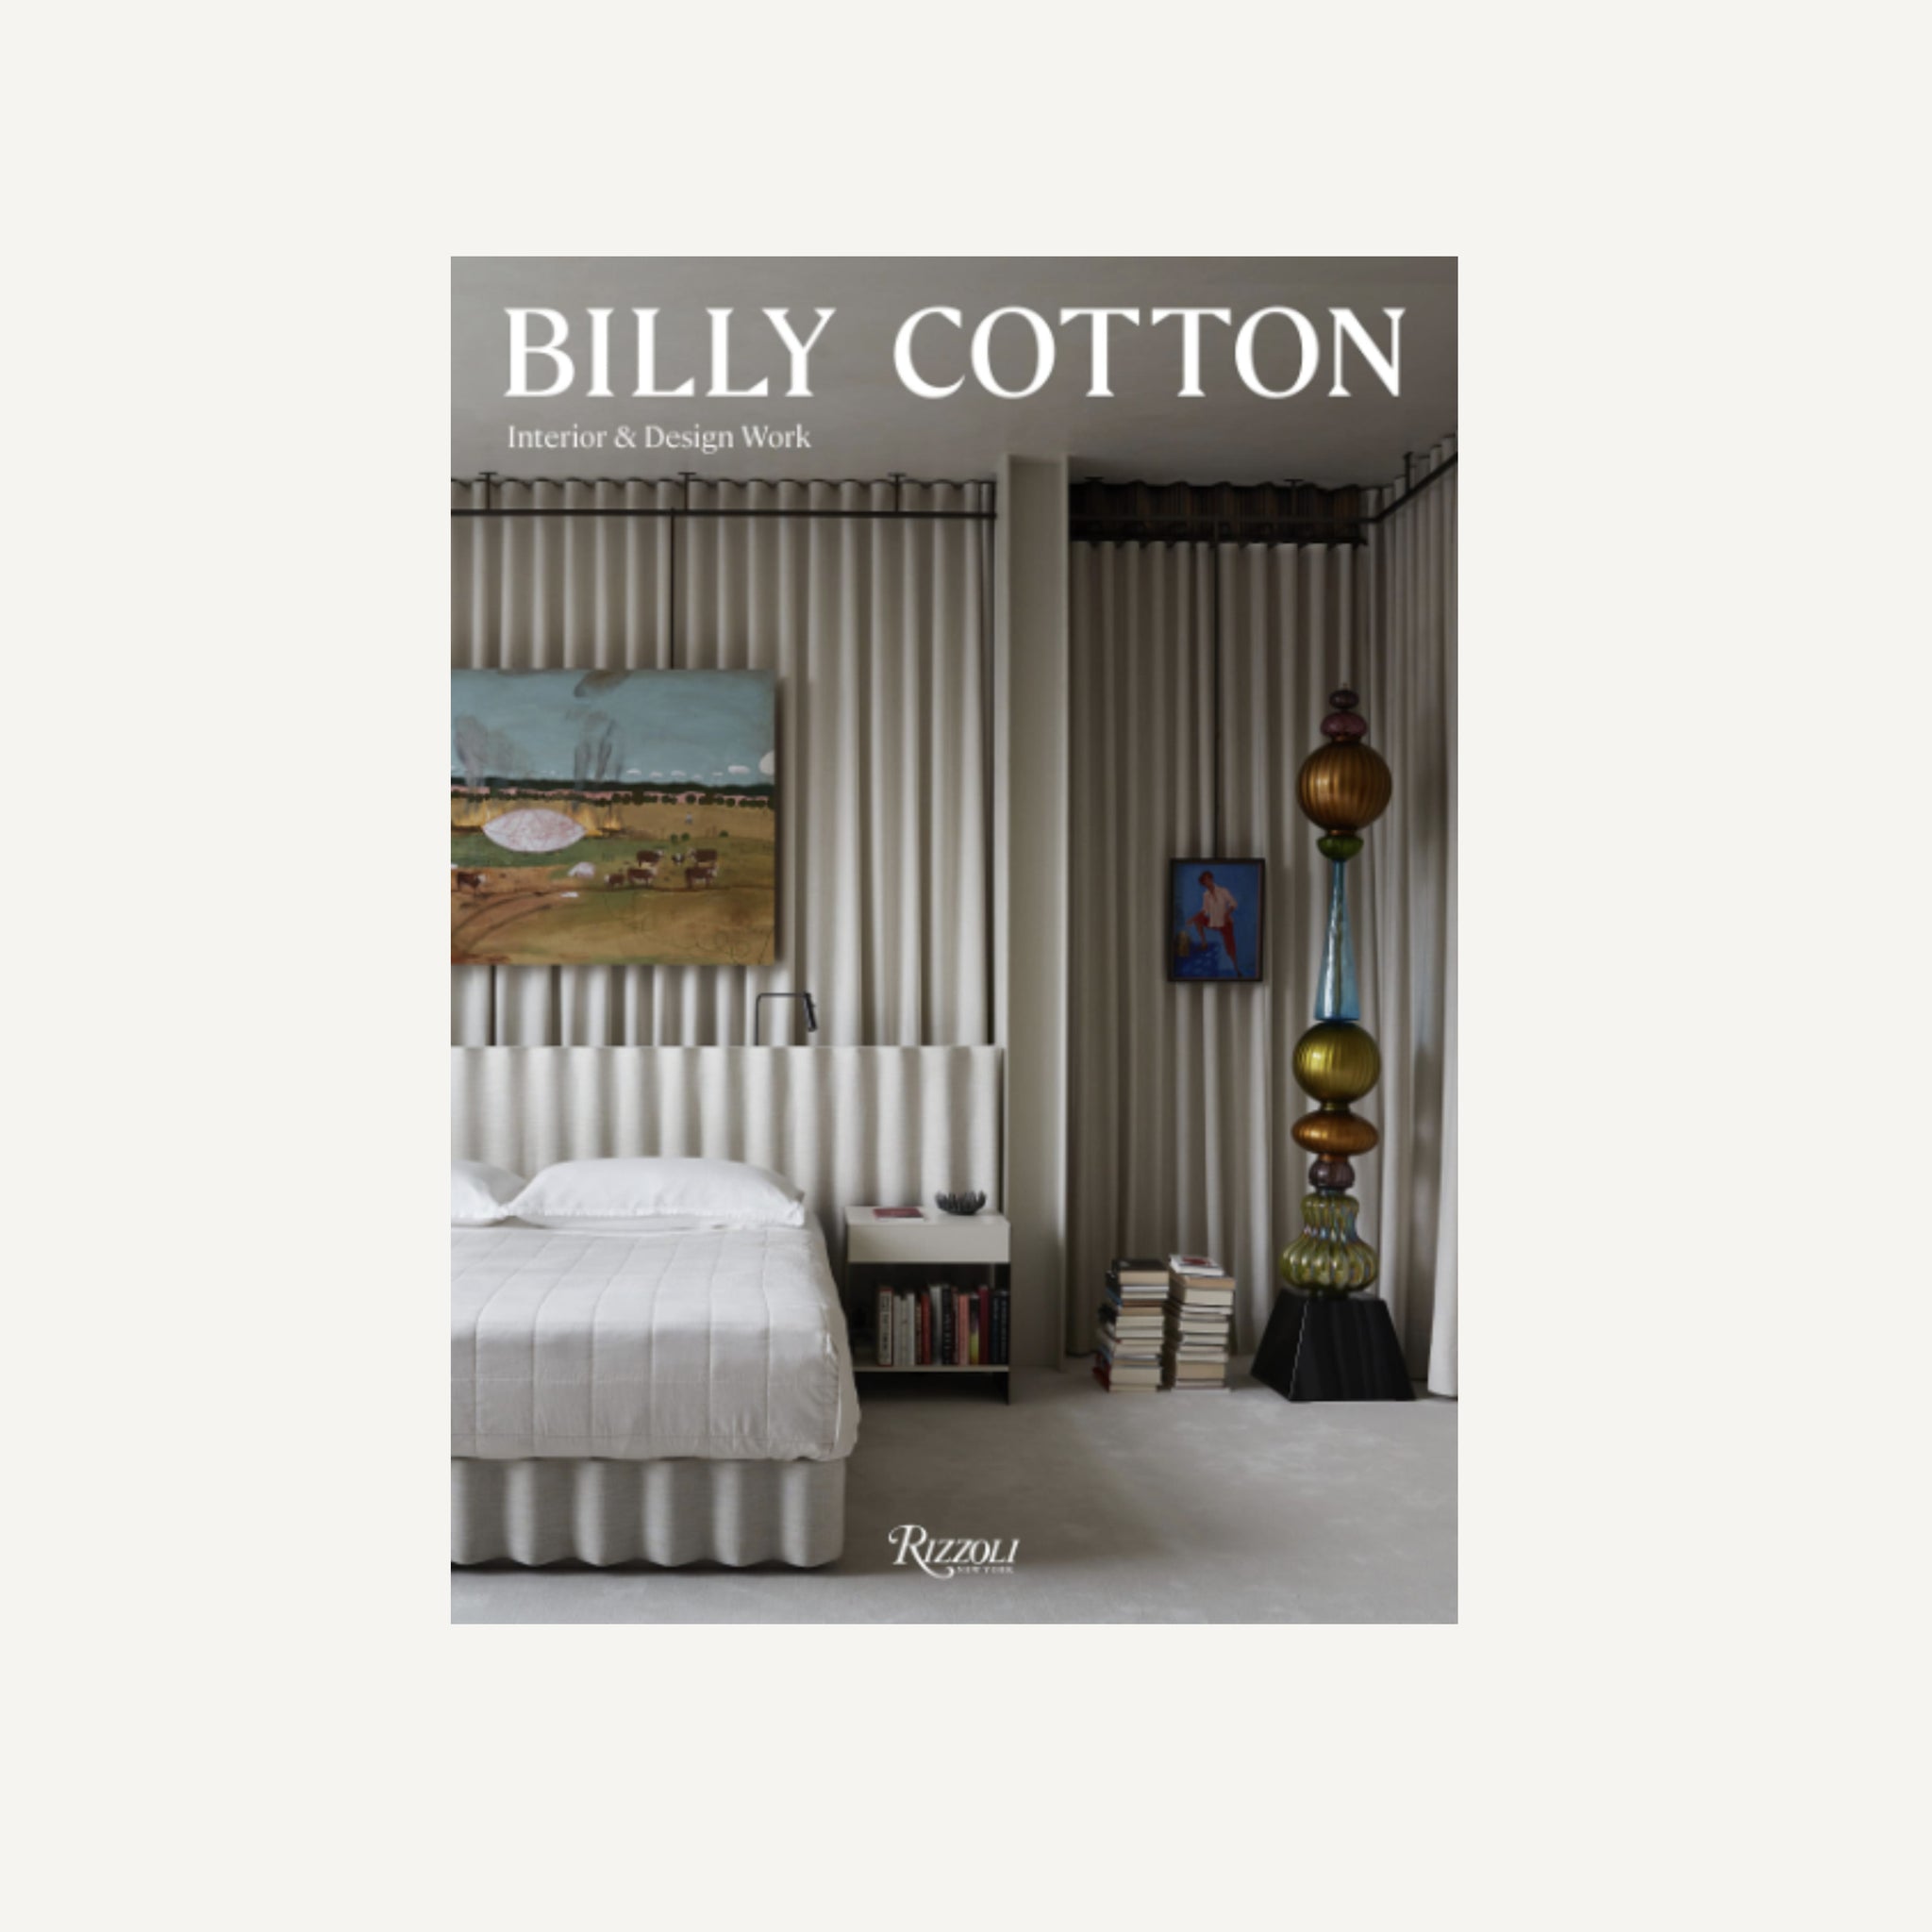 BILLY COTTON: INTERIOR AND DESIGN WORK